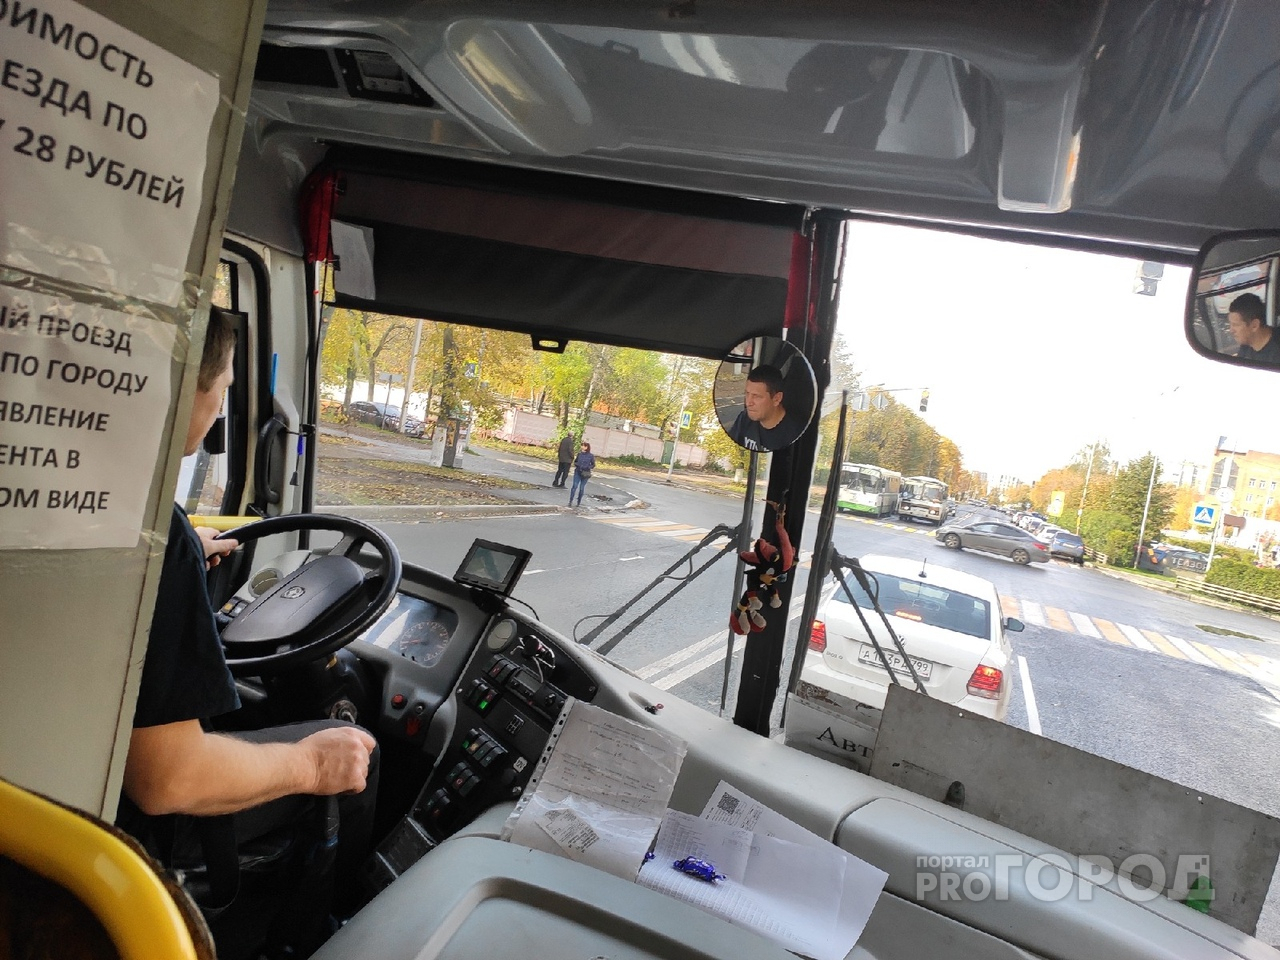 "Анархия" в общественном транспорте Ярославля: кондукторы и пассажиры взбунтовались